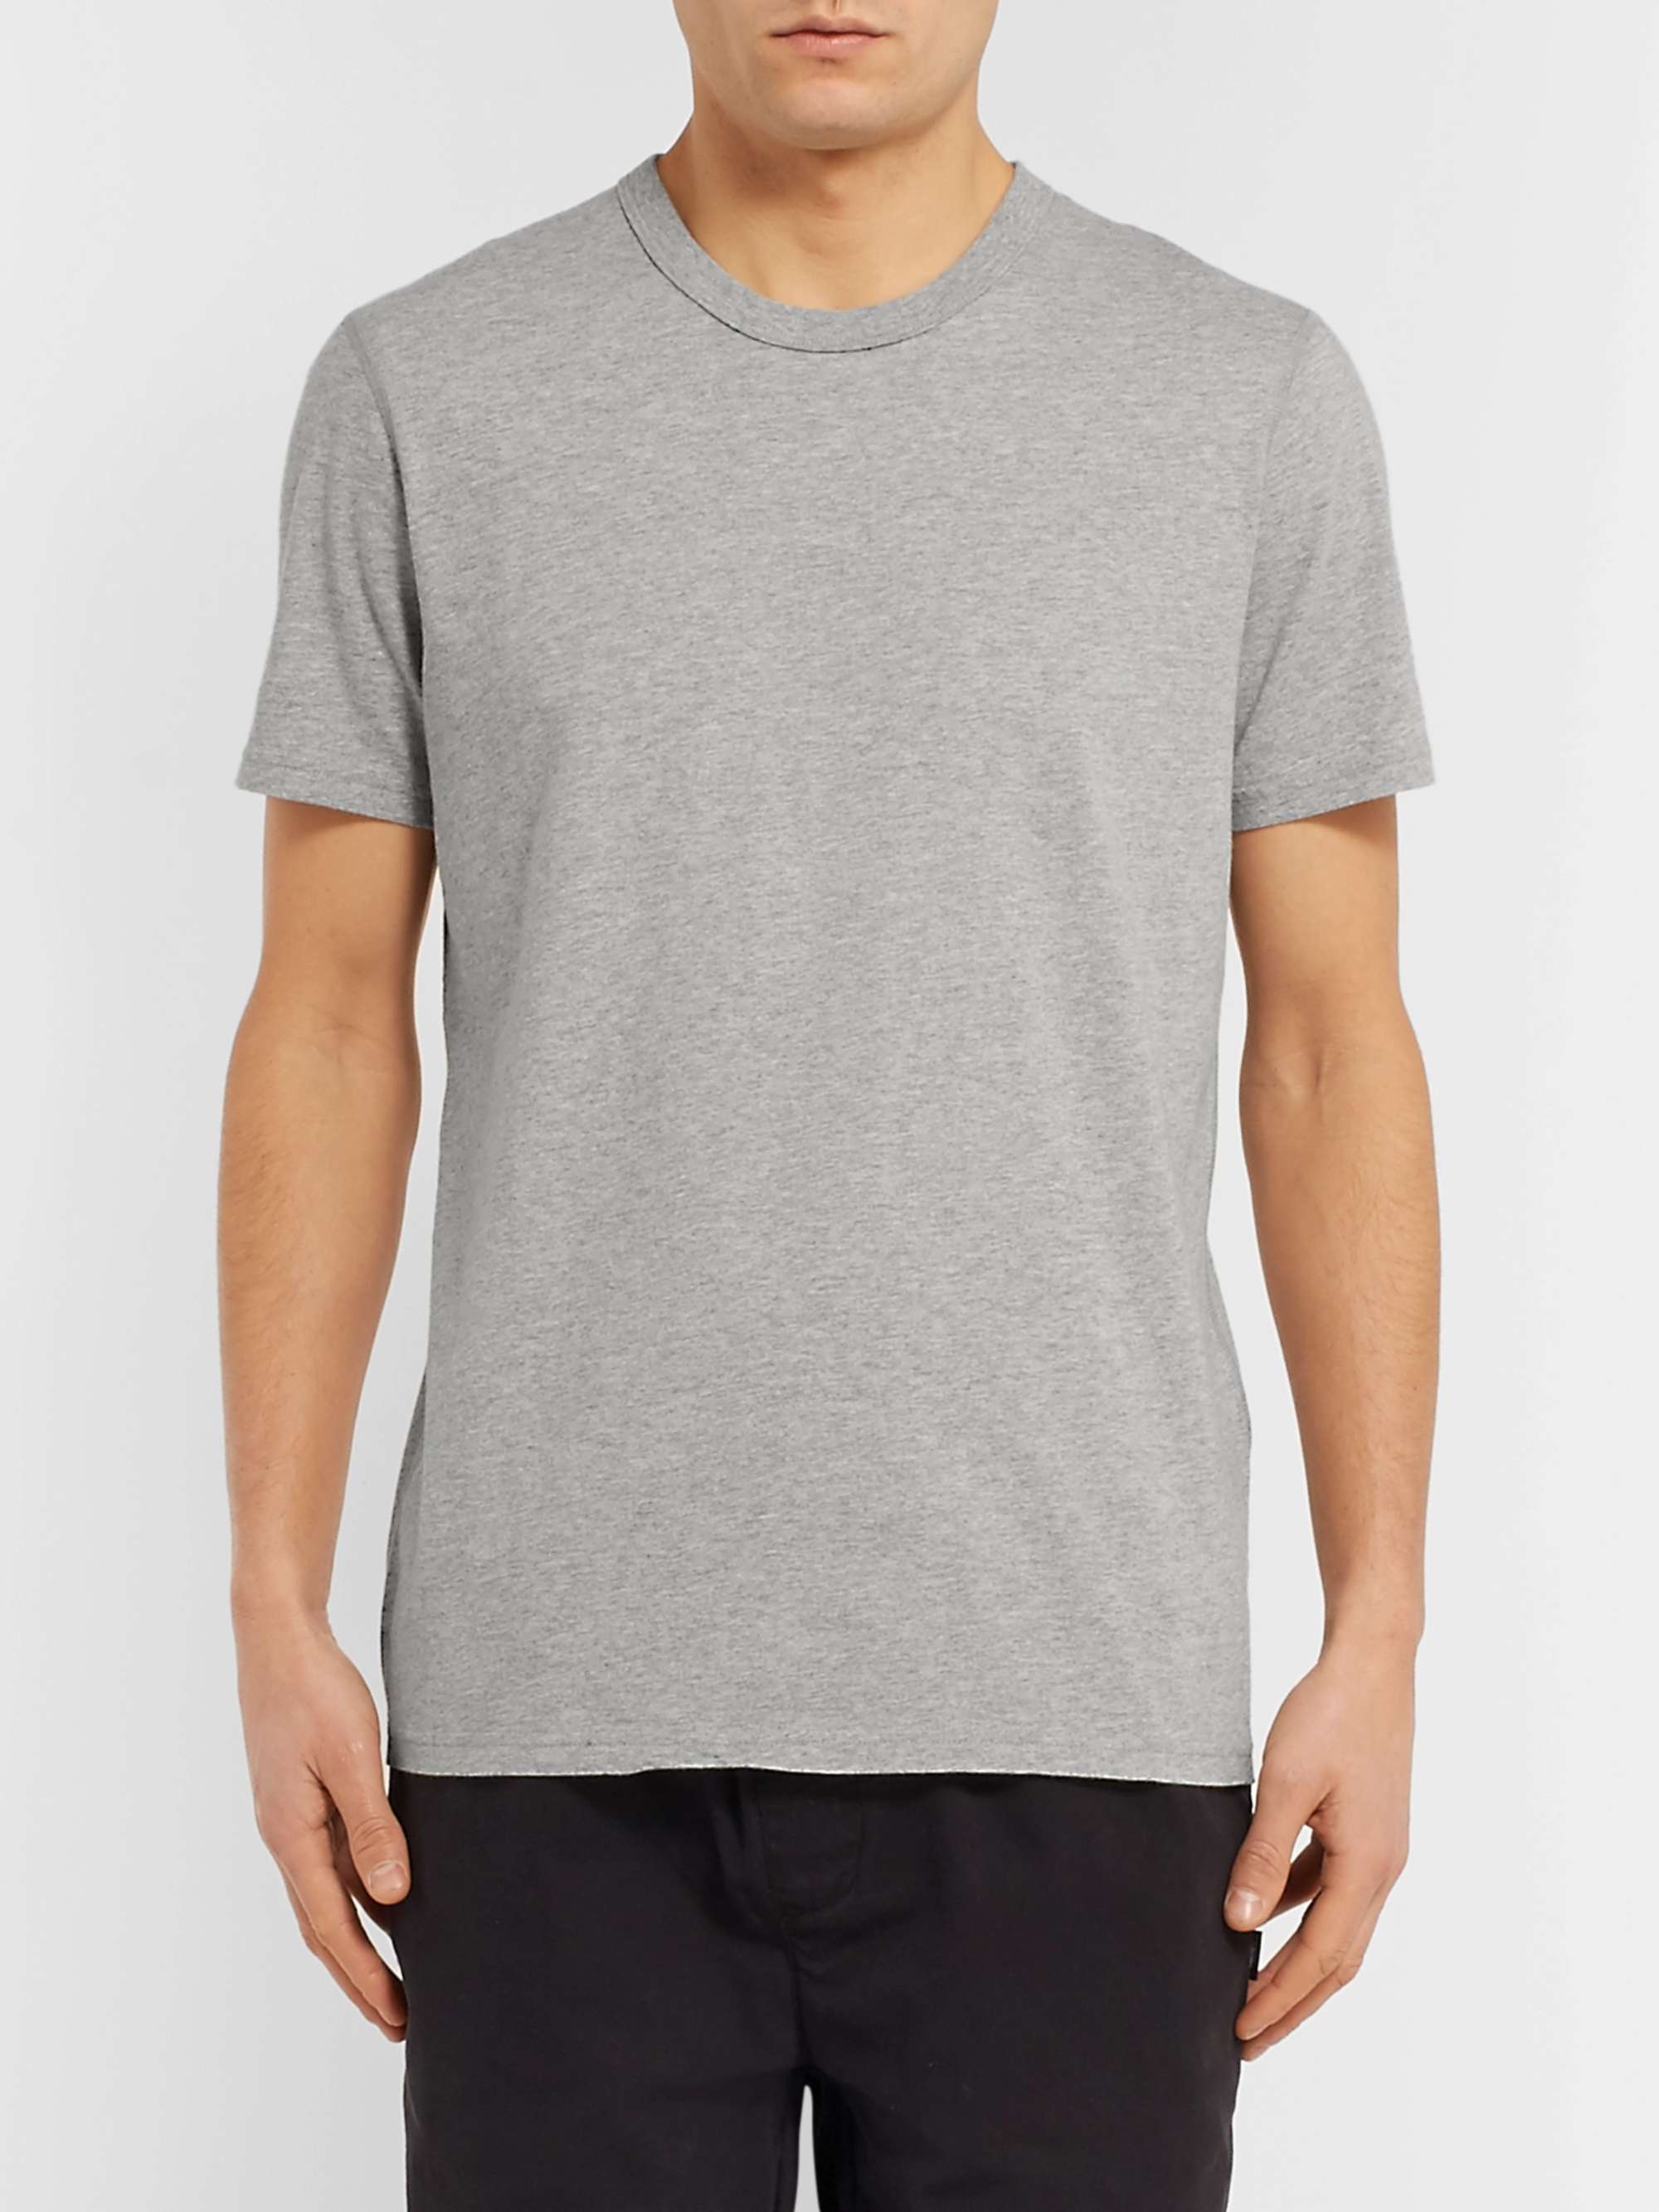 REIGNING CHAMP Ring-Spun Cotton-Jersey T-Shirt